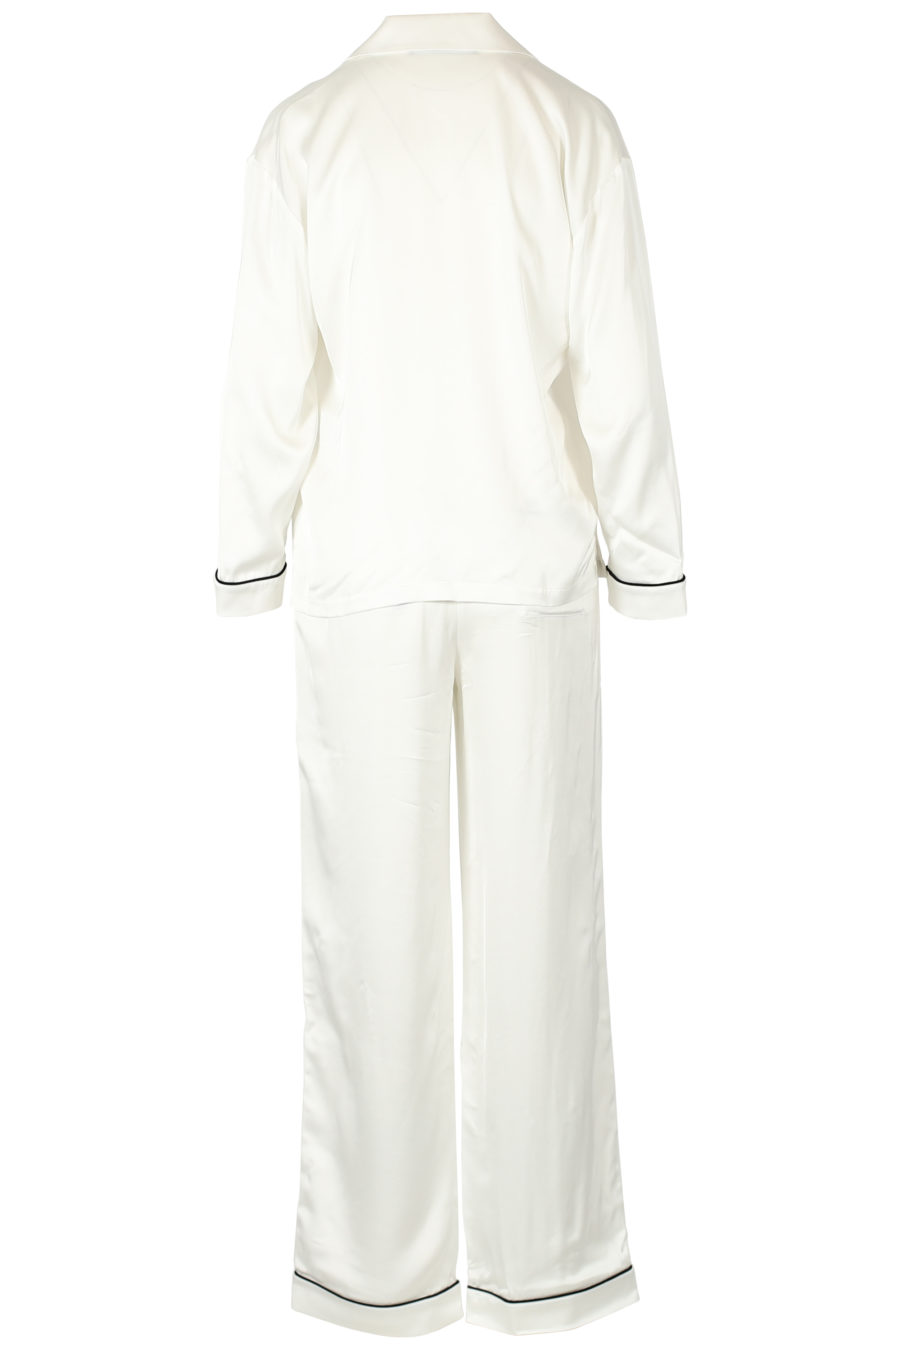 Conjunto de oferta de pijama de cetim branco - IMG 3296